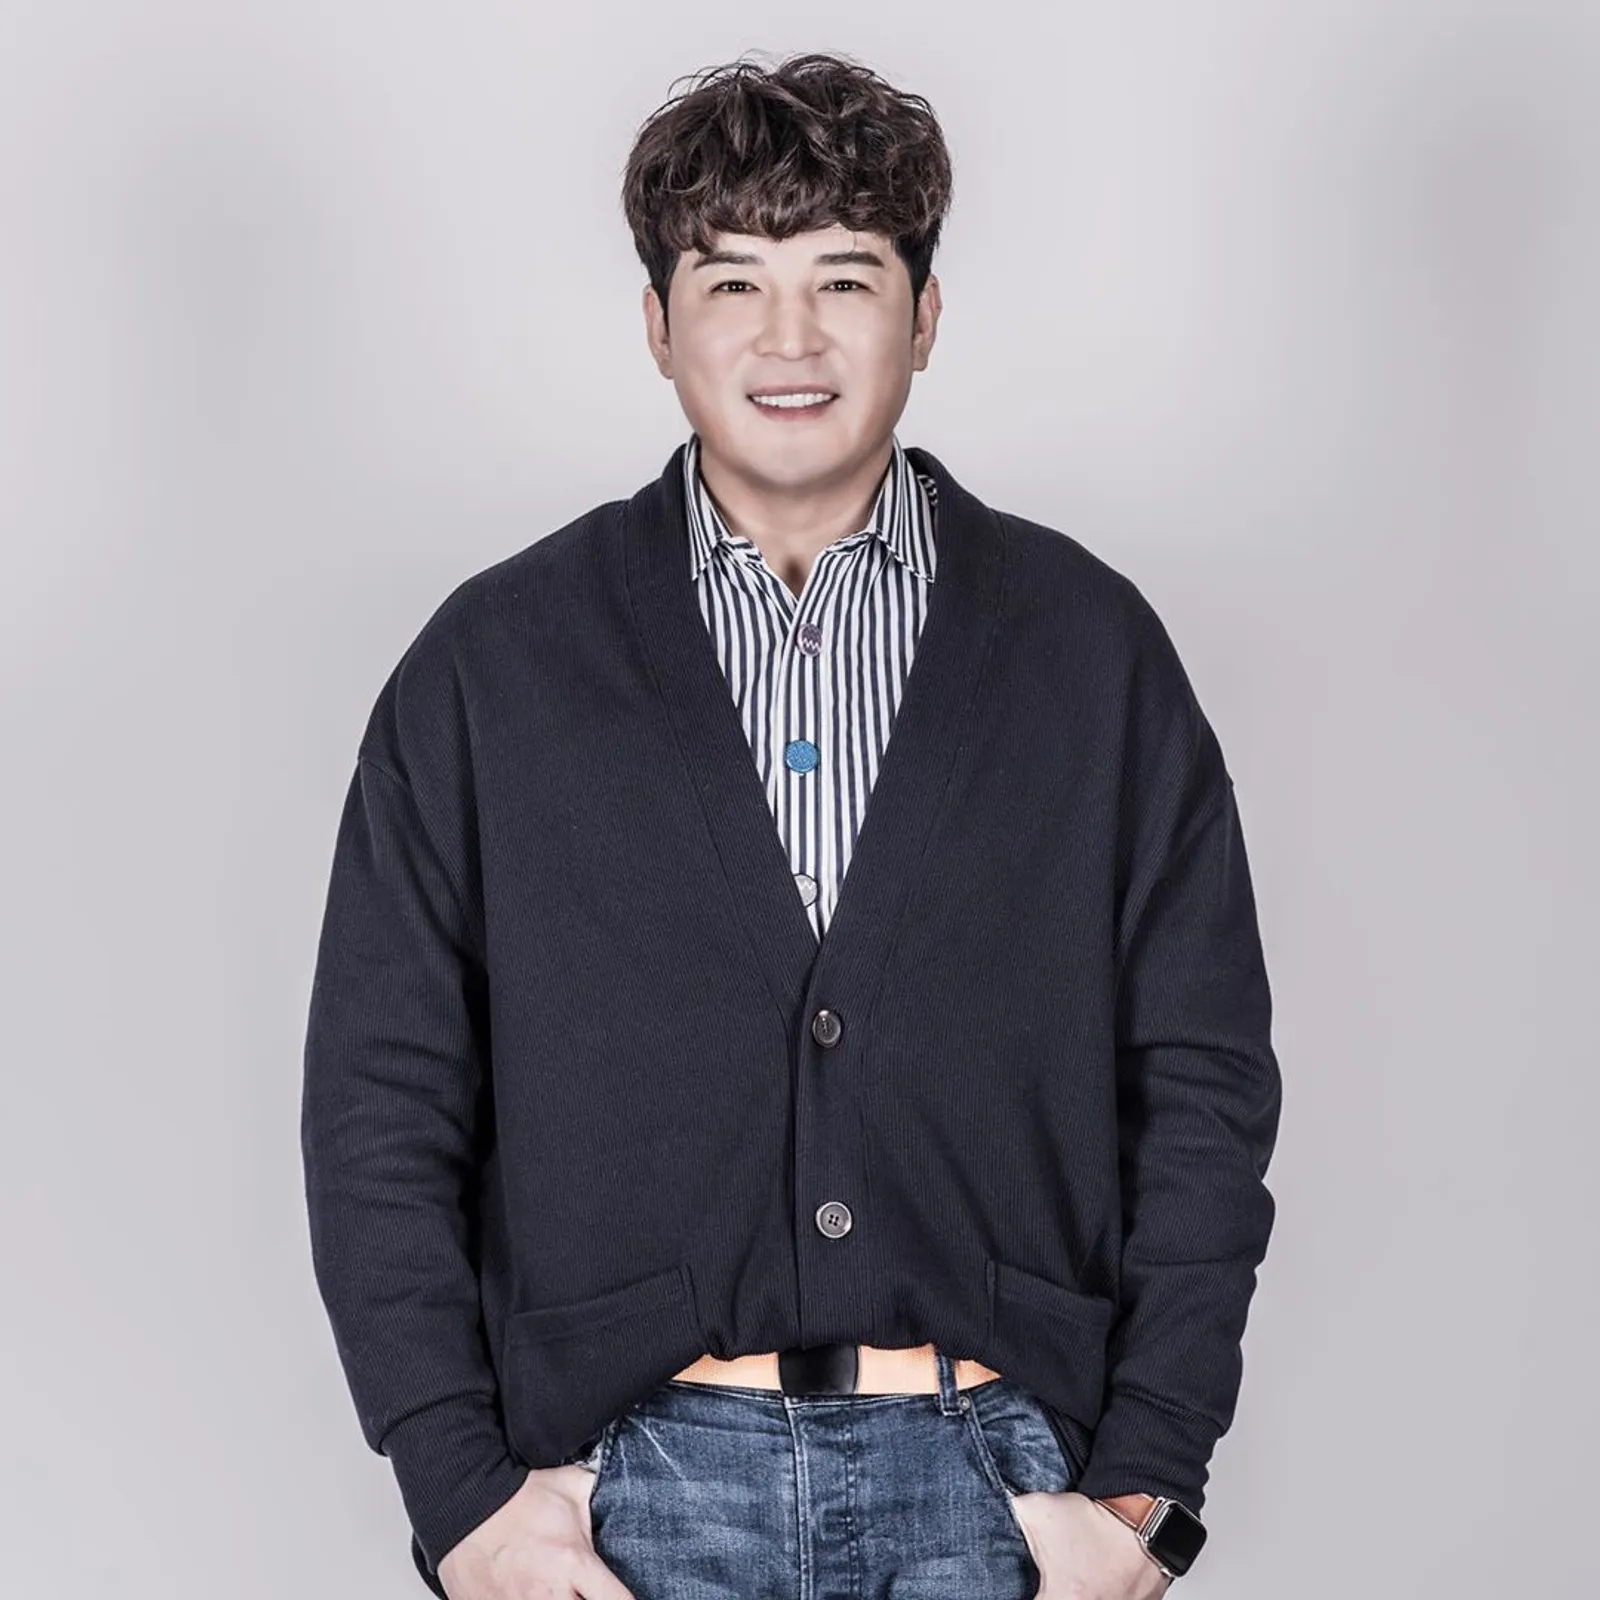 Profil Shindong Super Junior yang Resmi Sudah Punya Pacar